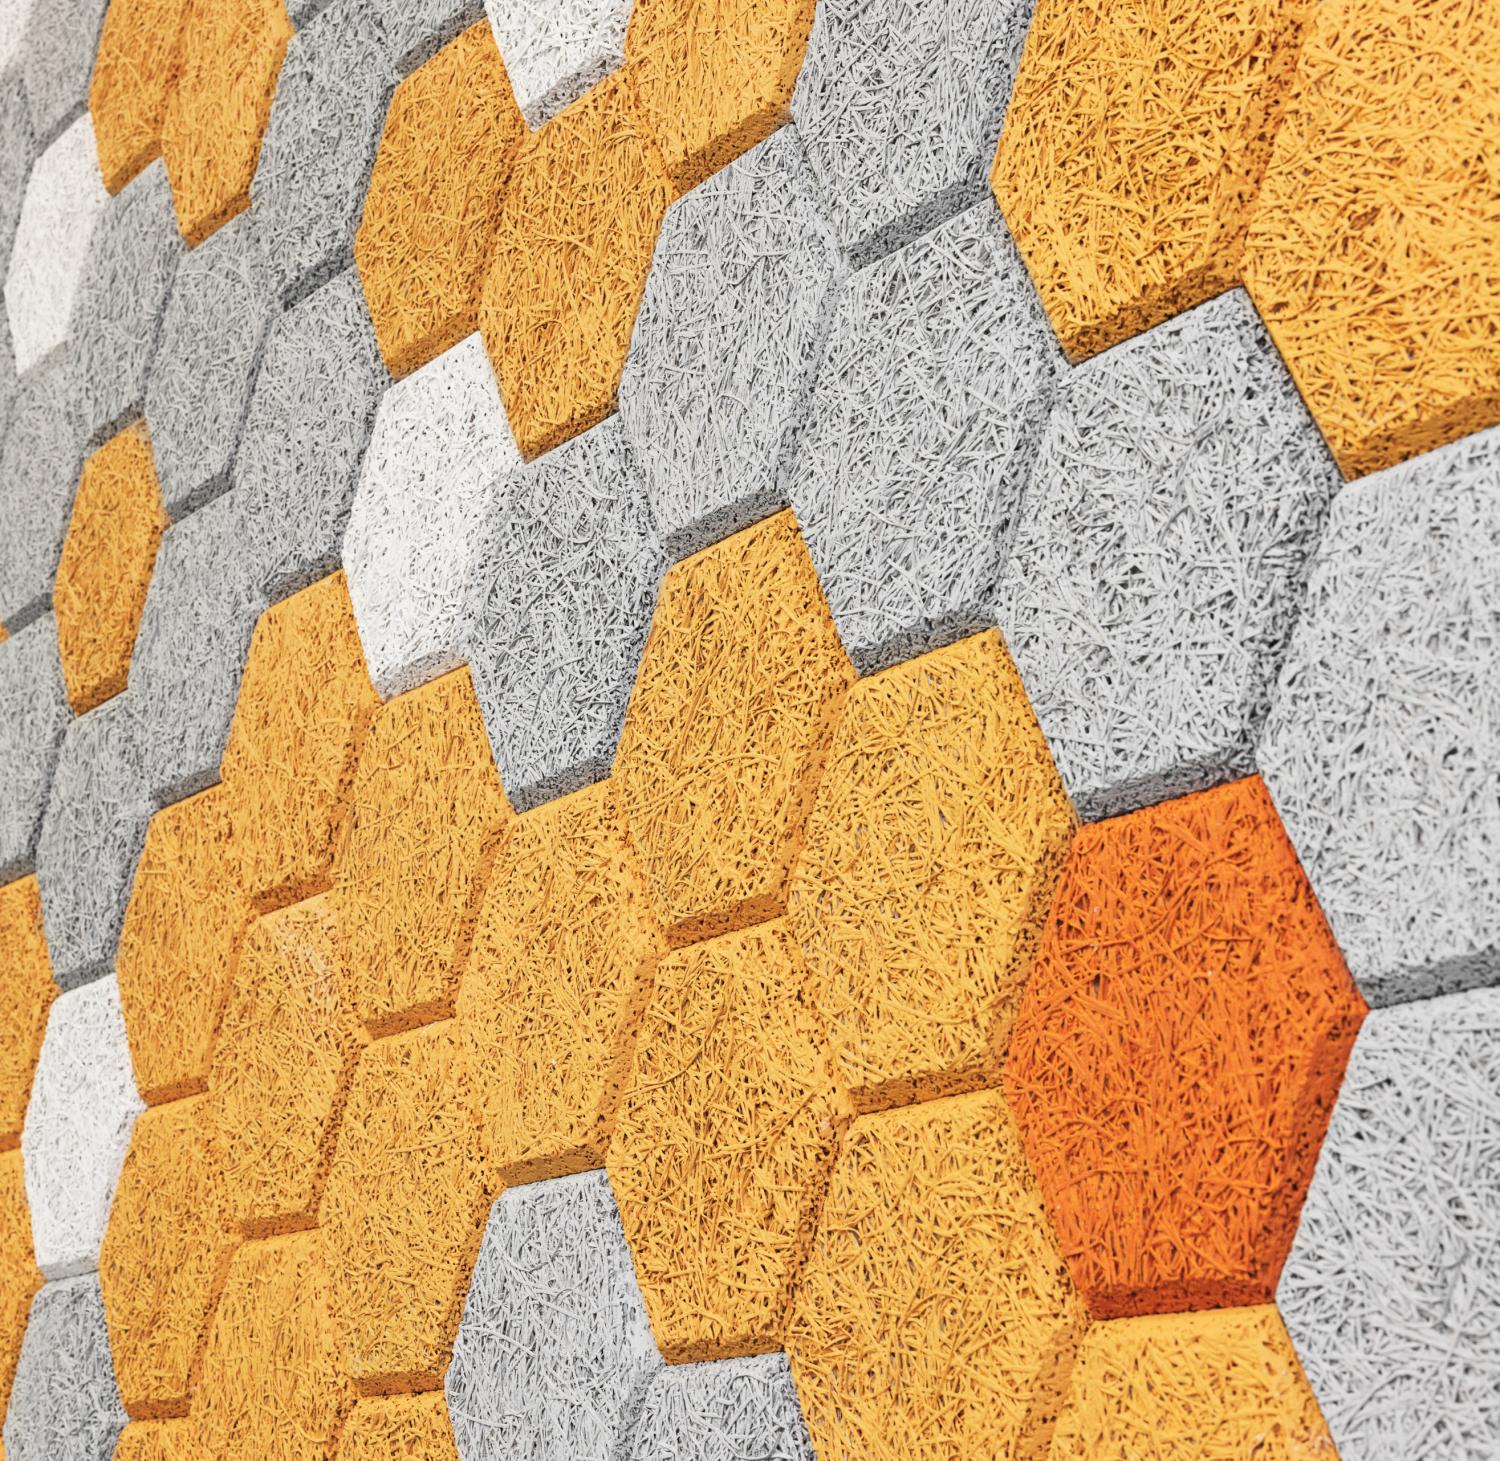 Hexagon Wall Tiles - Sound absorbing wood wool hexagon wall mural tiles